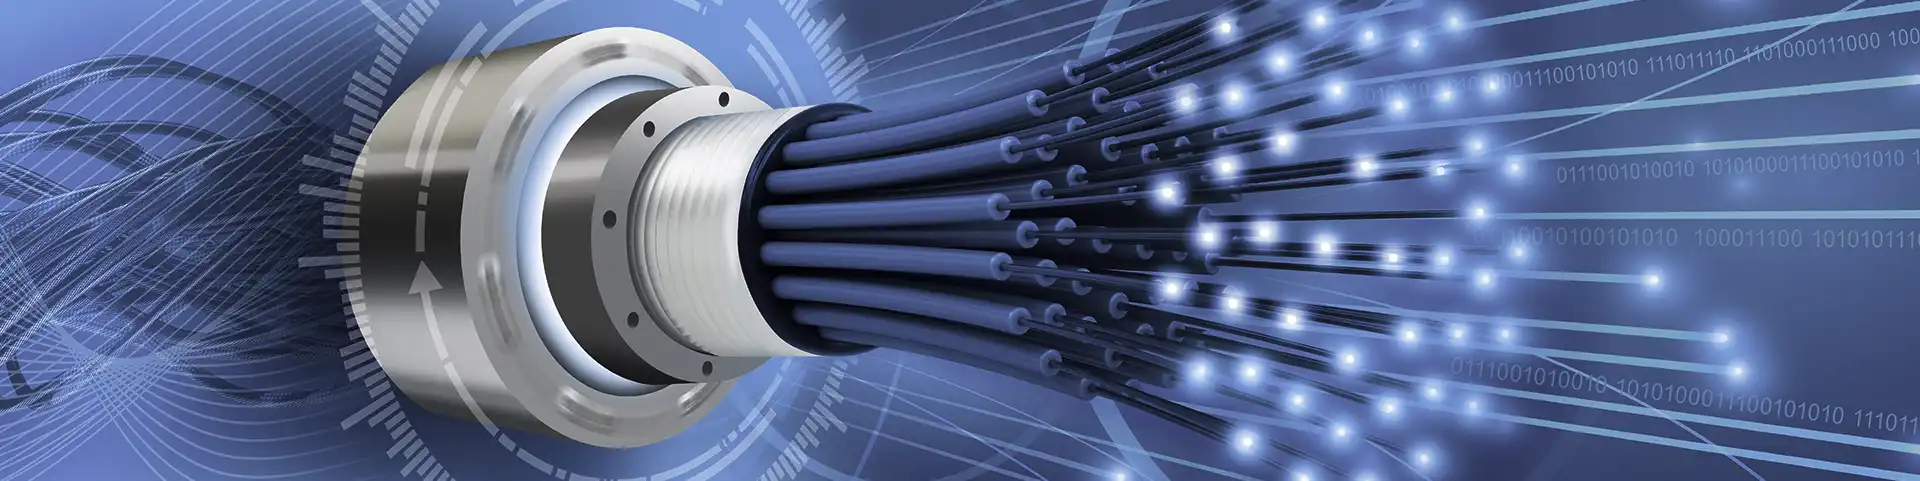 Juntas rotativas de fibra óptica para la transmisión de datos a alta velocidad